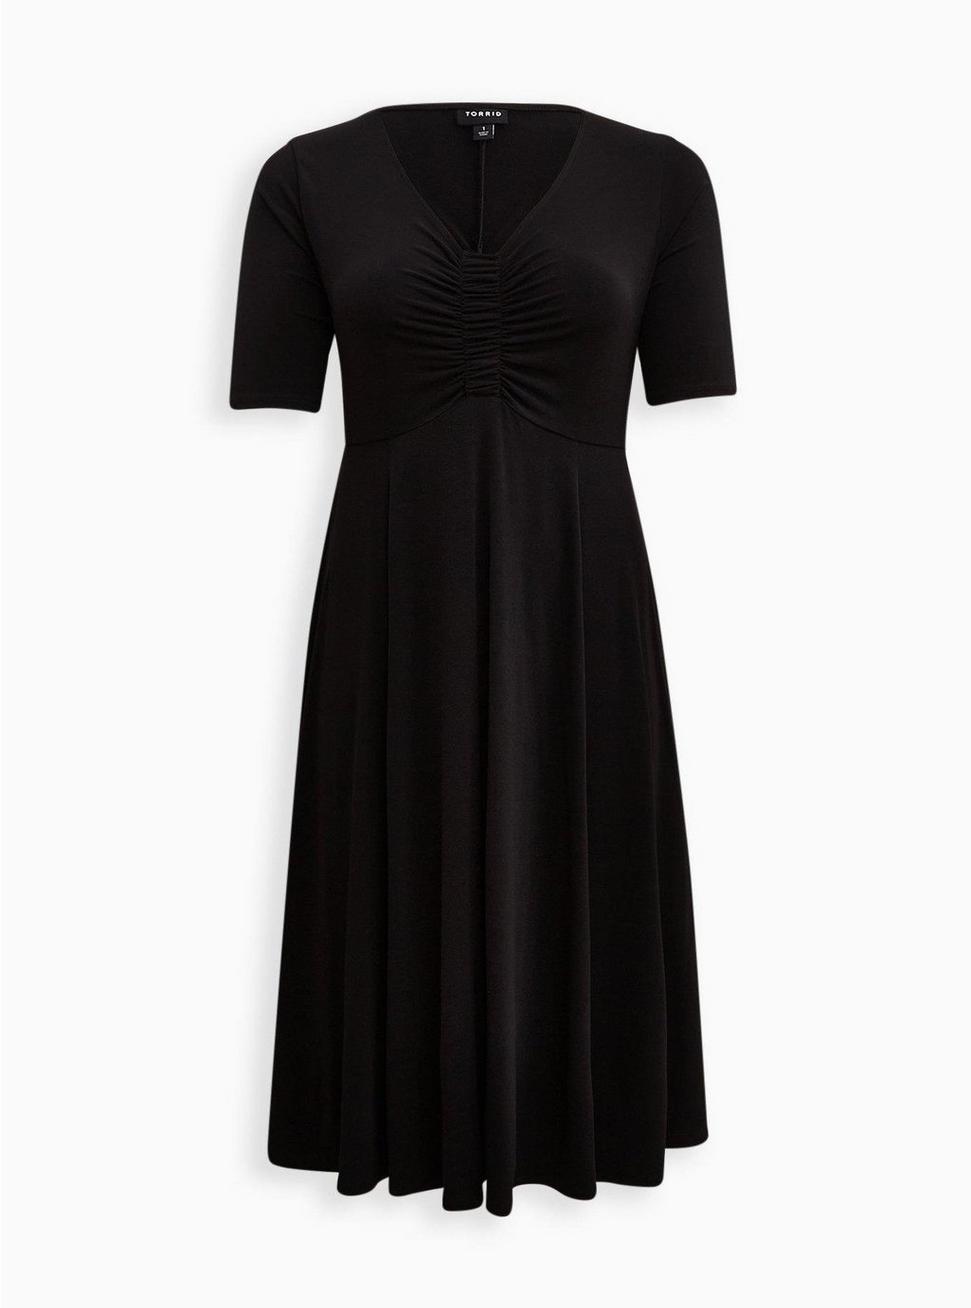 Midi Studio Knit Ruched Front Dress, DEEP BLACK, hi-res